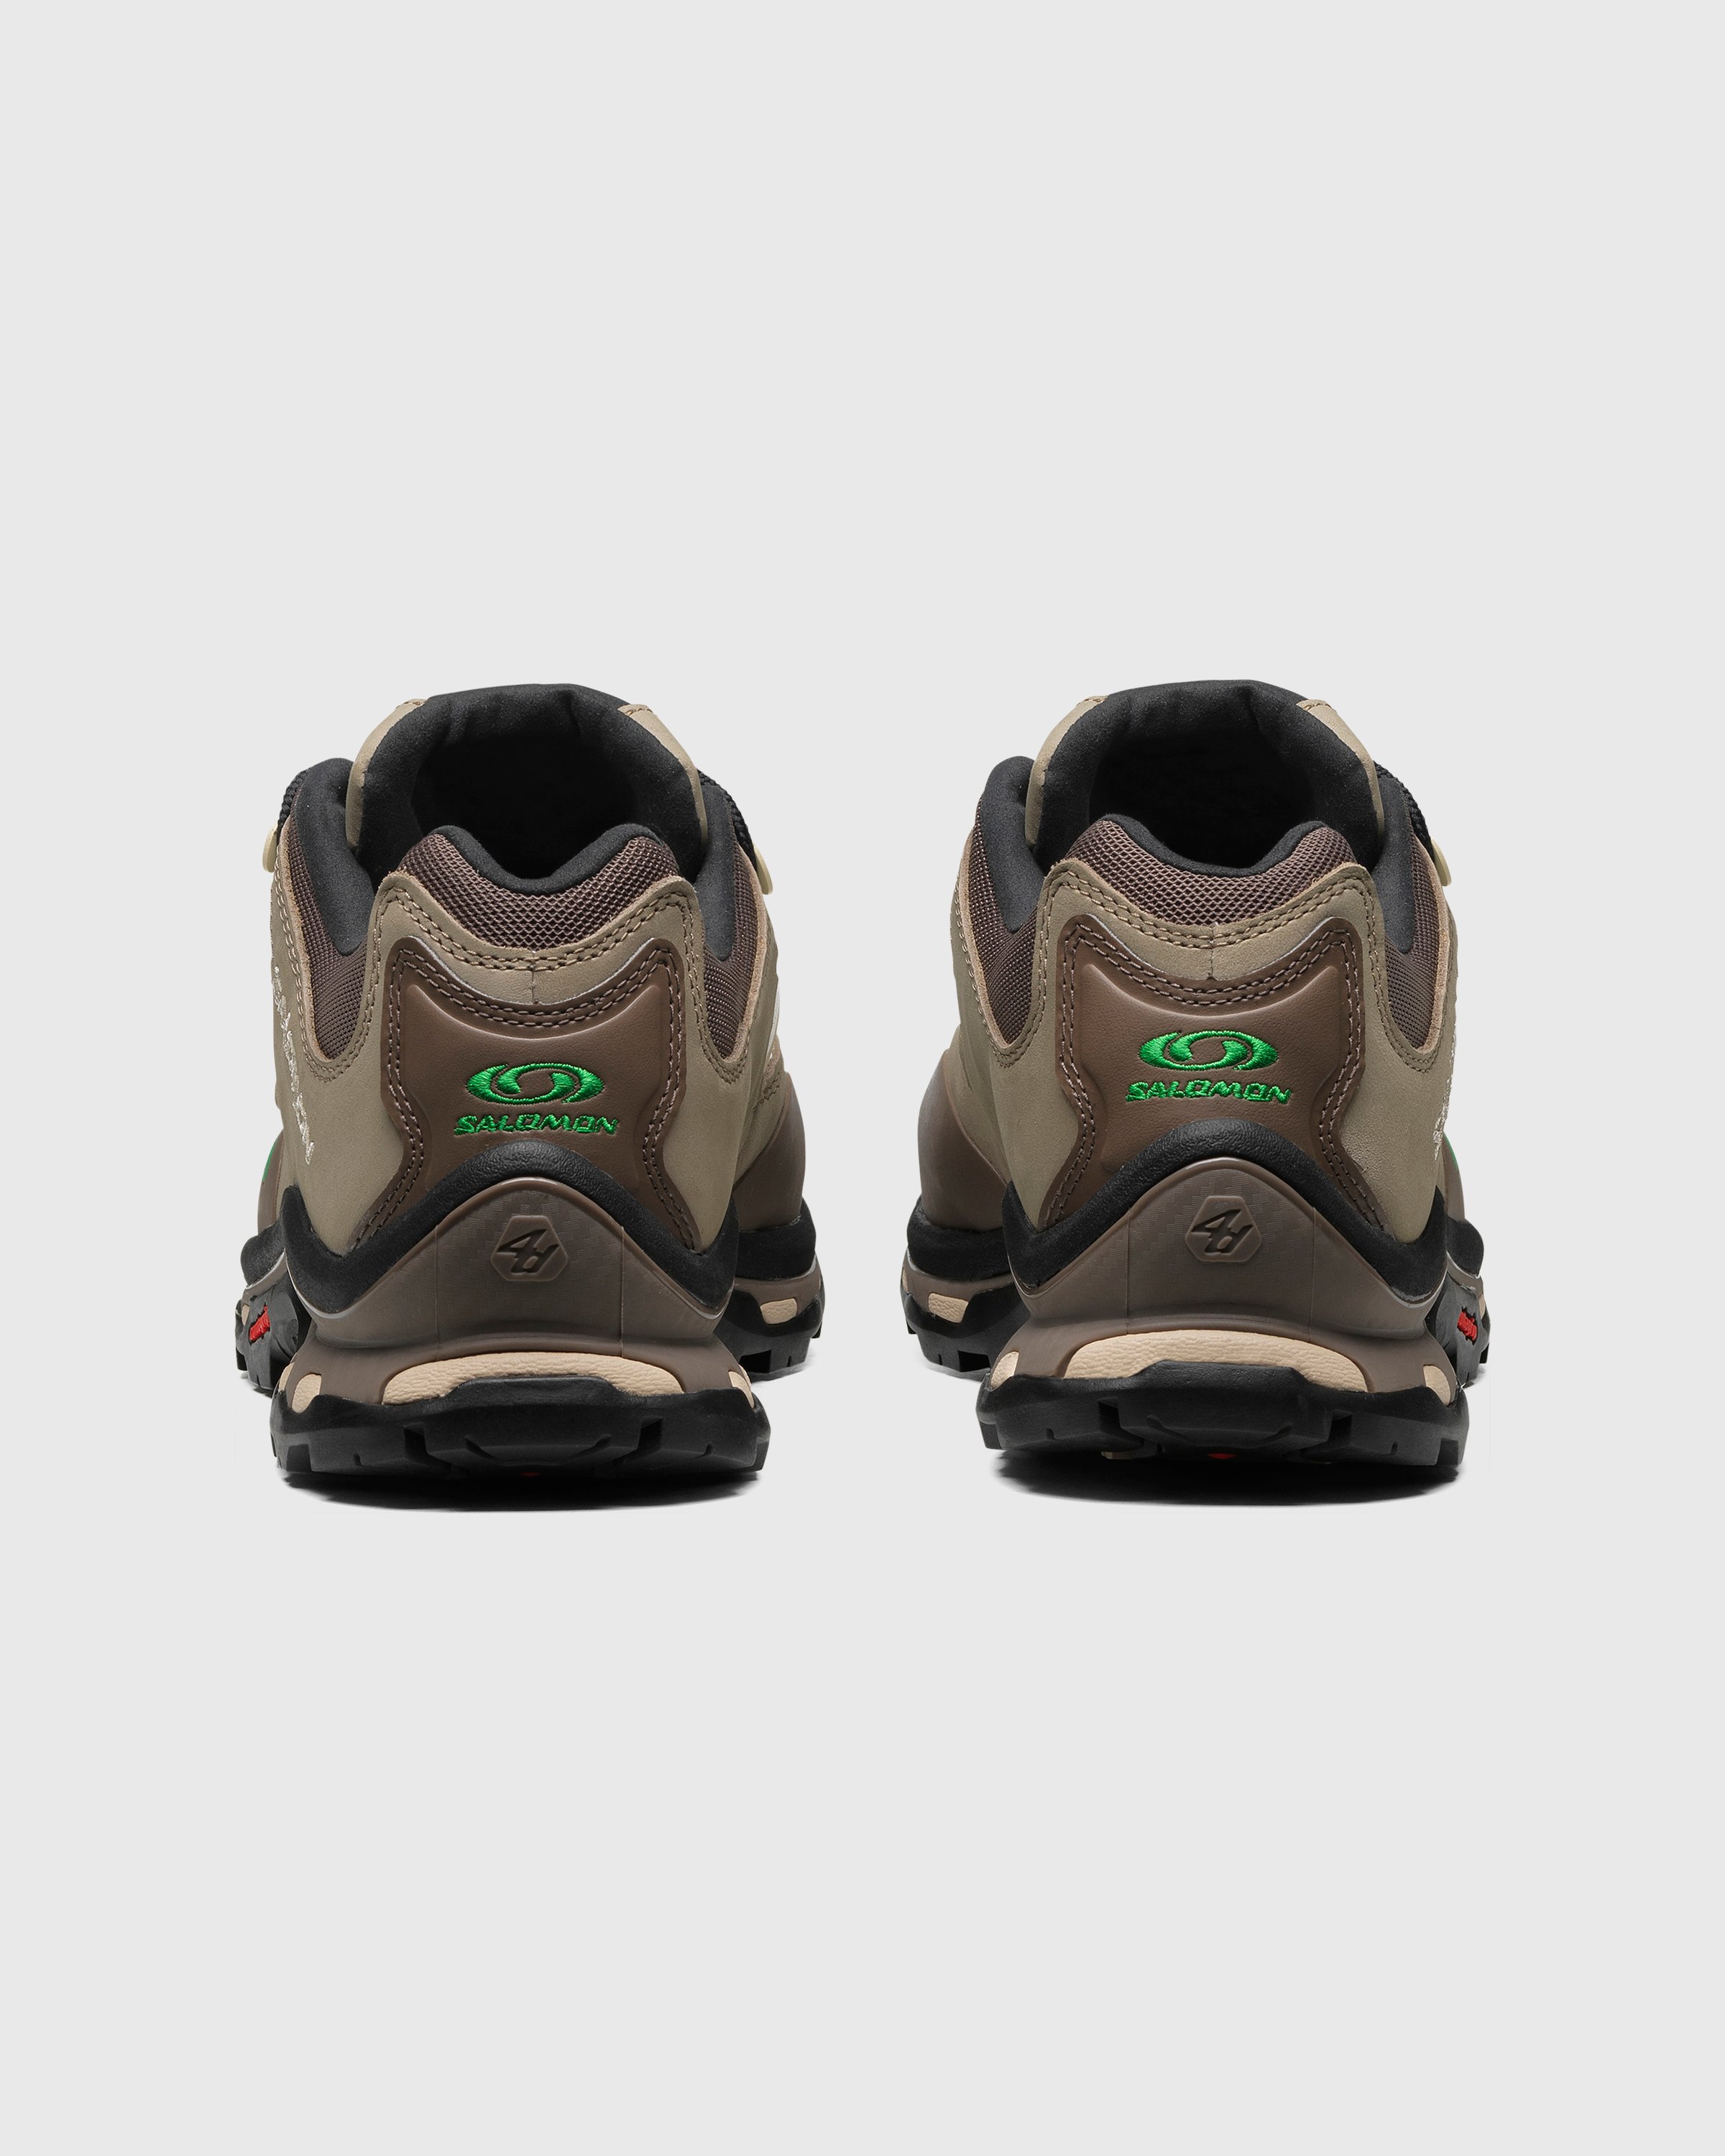 Salomon - XT-QUEST 2 Falcon/Cement/Bright Green - Footwear - Multi - Image 4